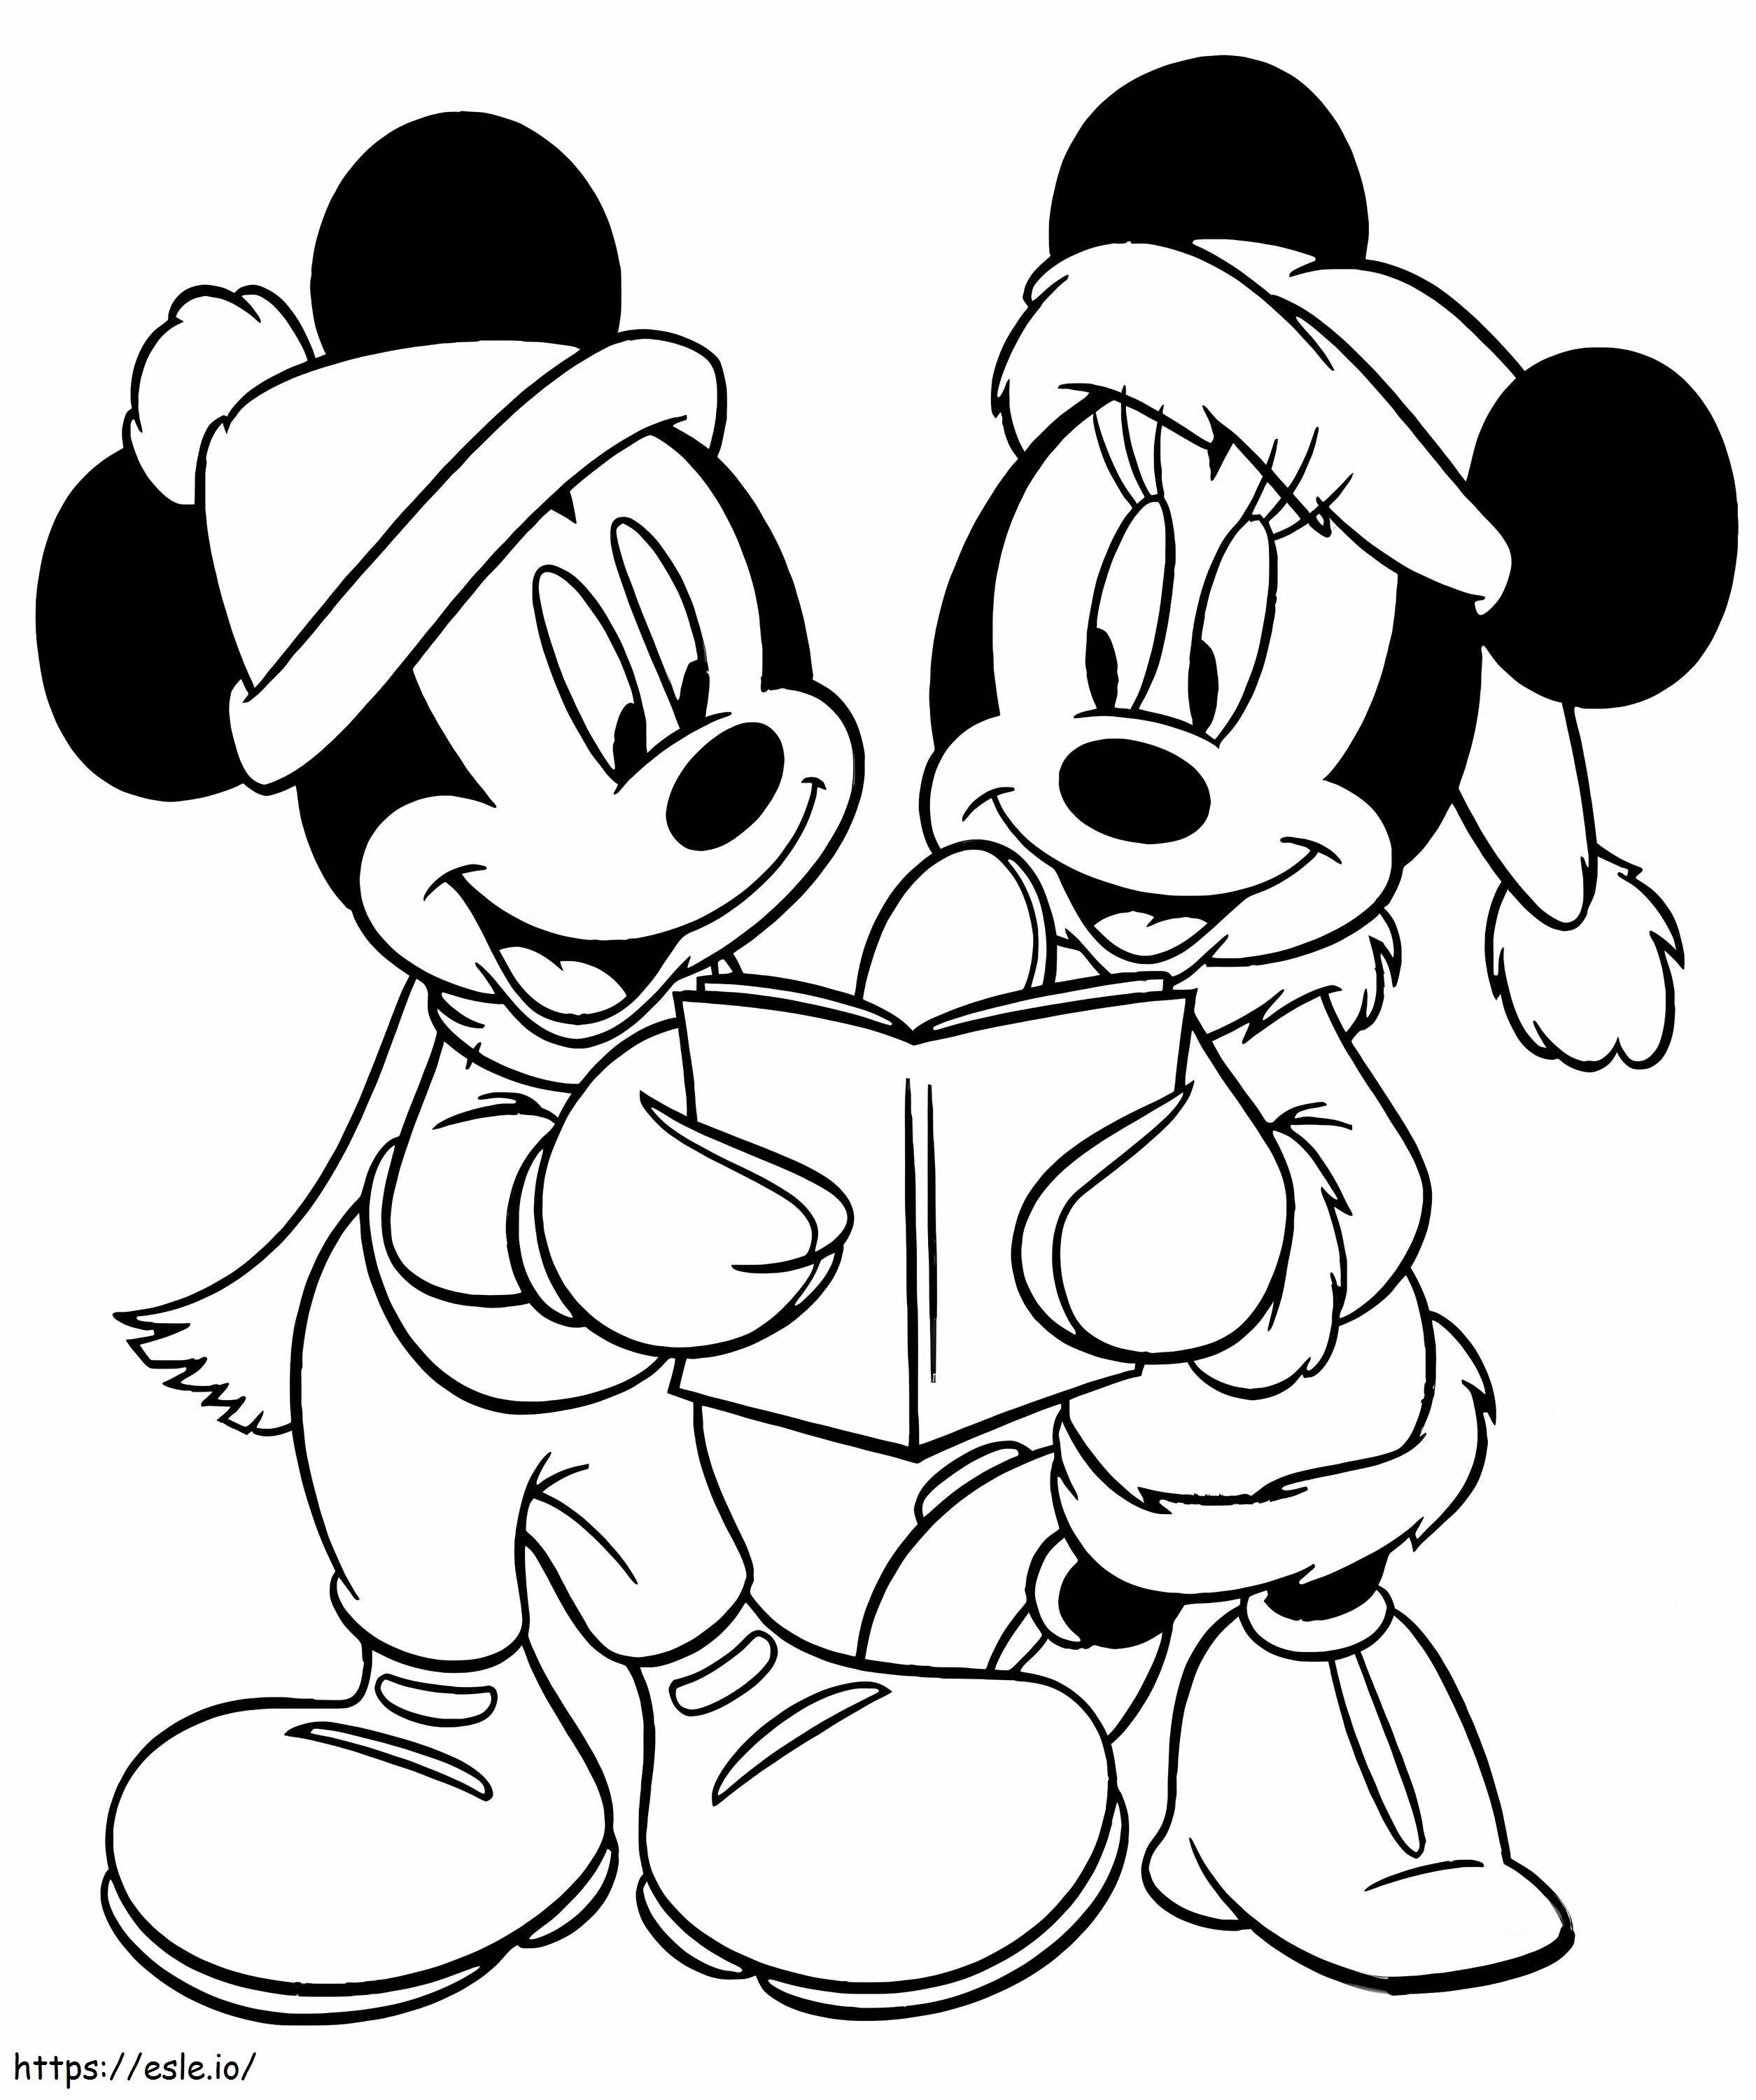 Mickey und Minnie an Weihnachten ausmalbilder